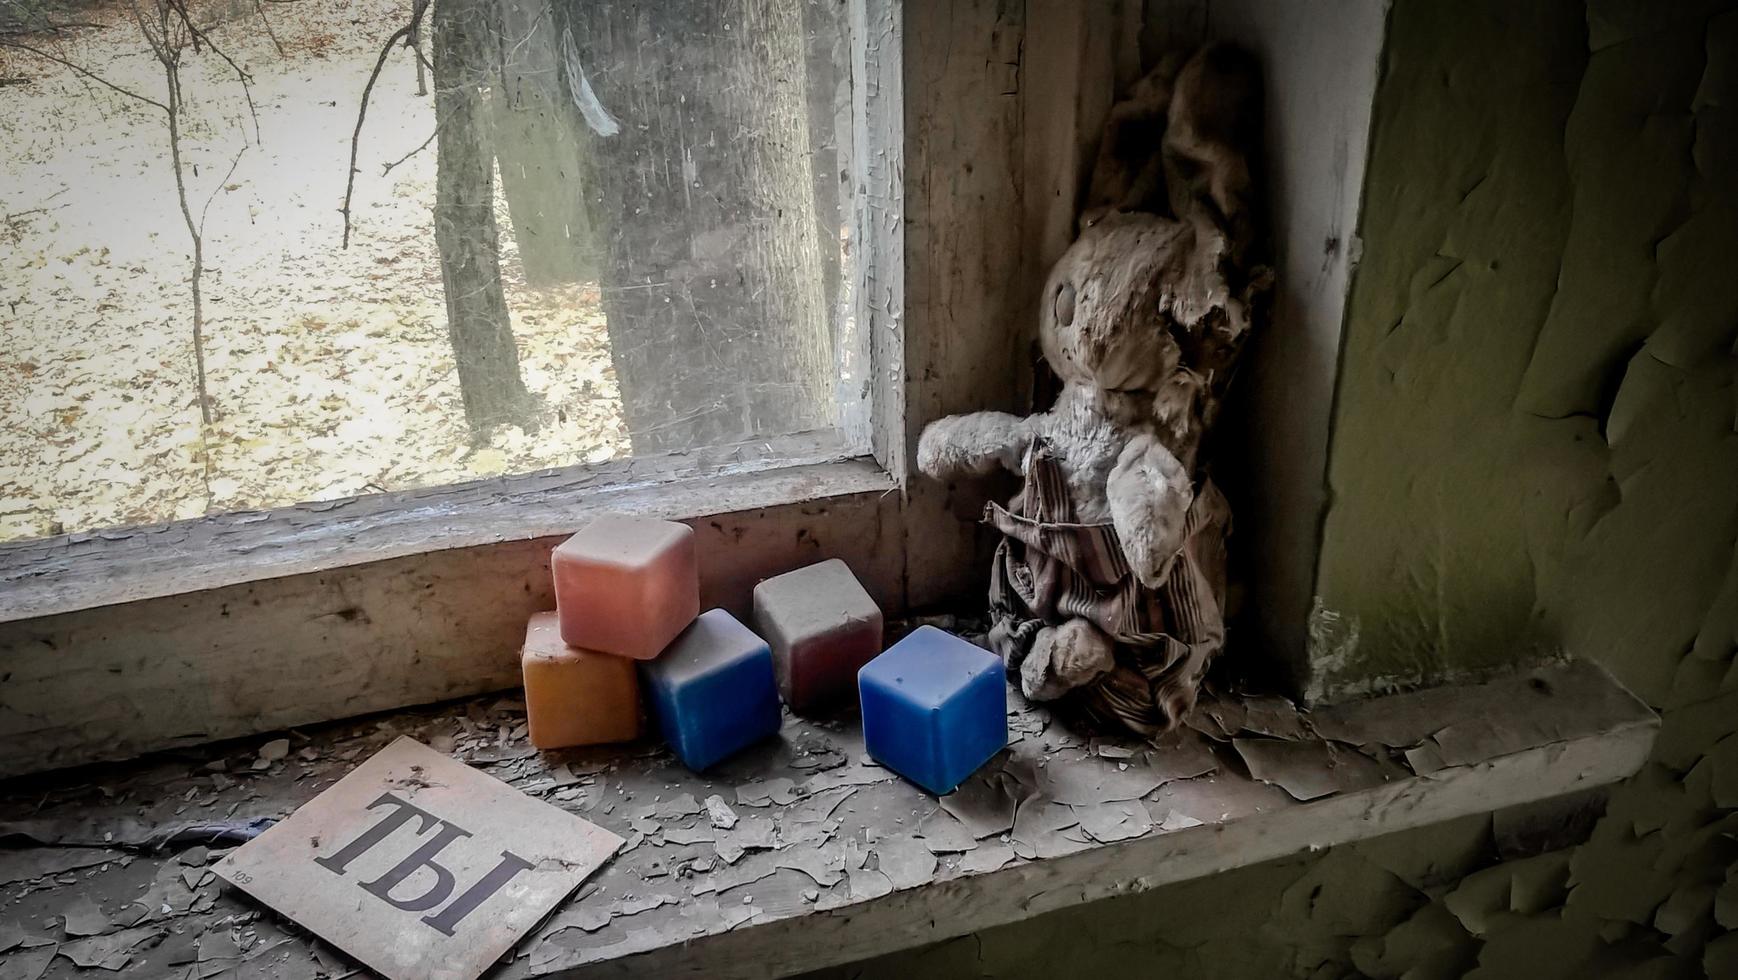 pripyat, oekraïne, 2021 - oude pop op een vensterbank in een verlaten huis in Tsjernobyl foto